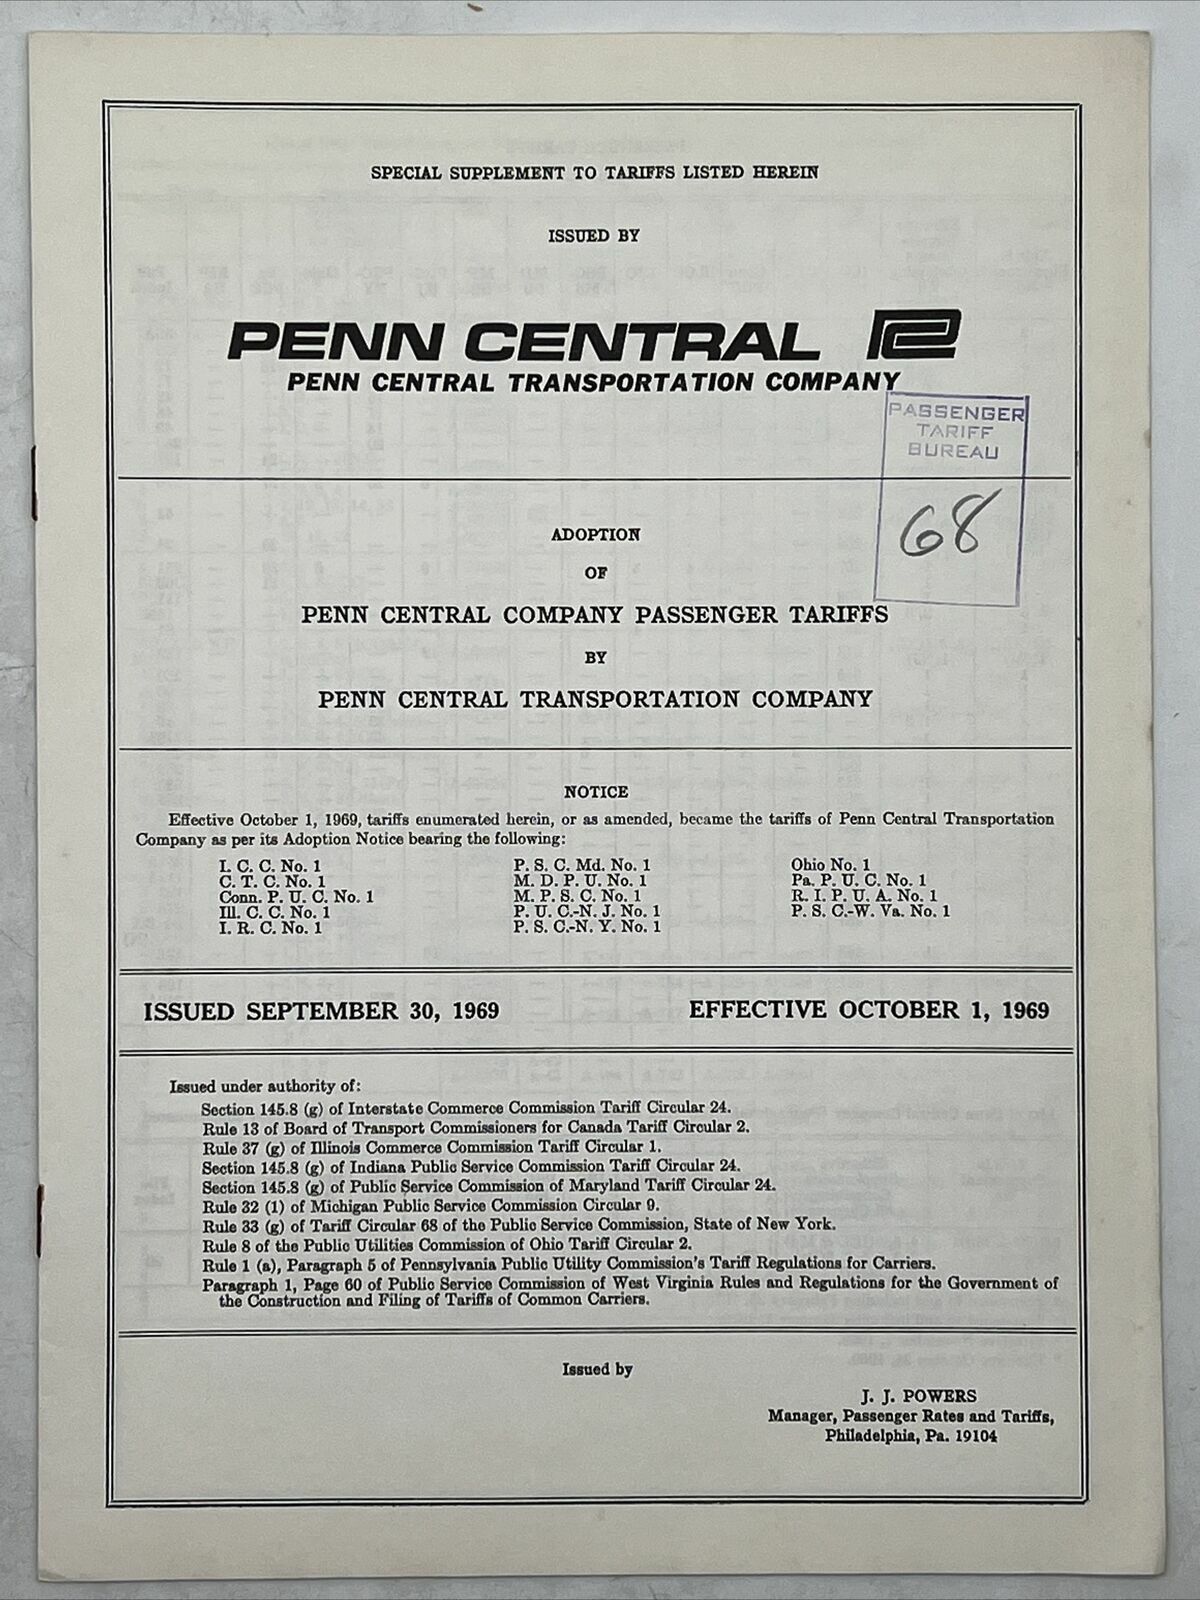 1969 THE PENNSYLVANIA RAILROAD COMPANY ICC No A-26501 SPECIAL SUPPLEMENT 3